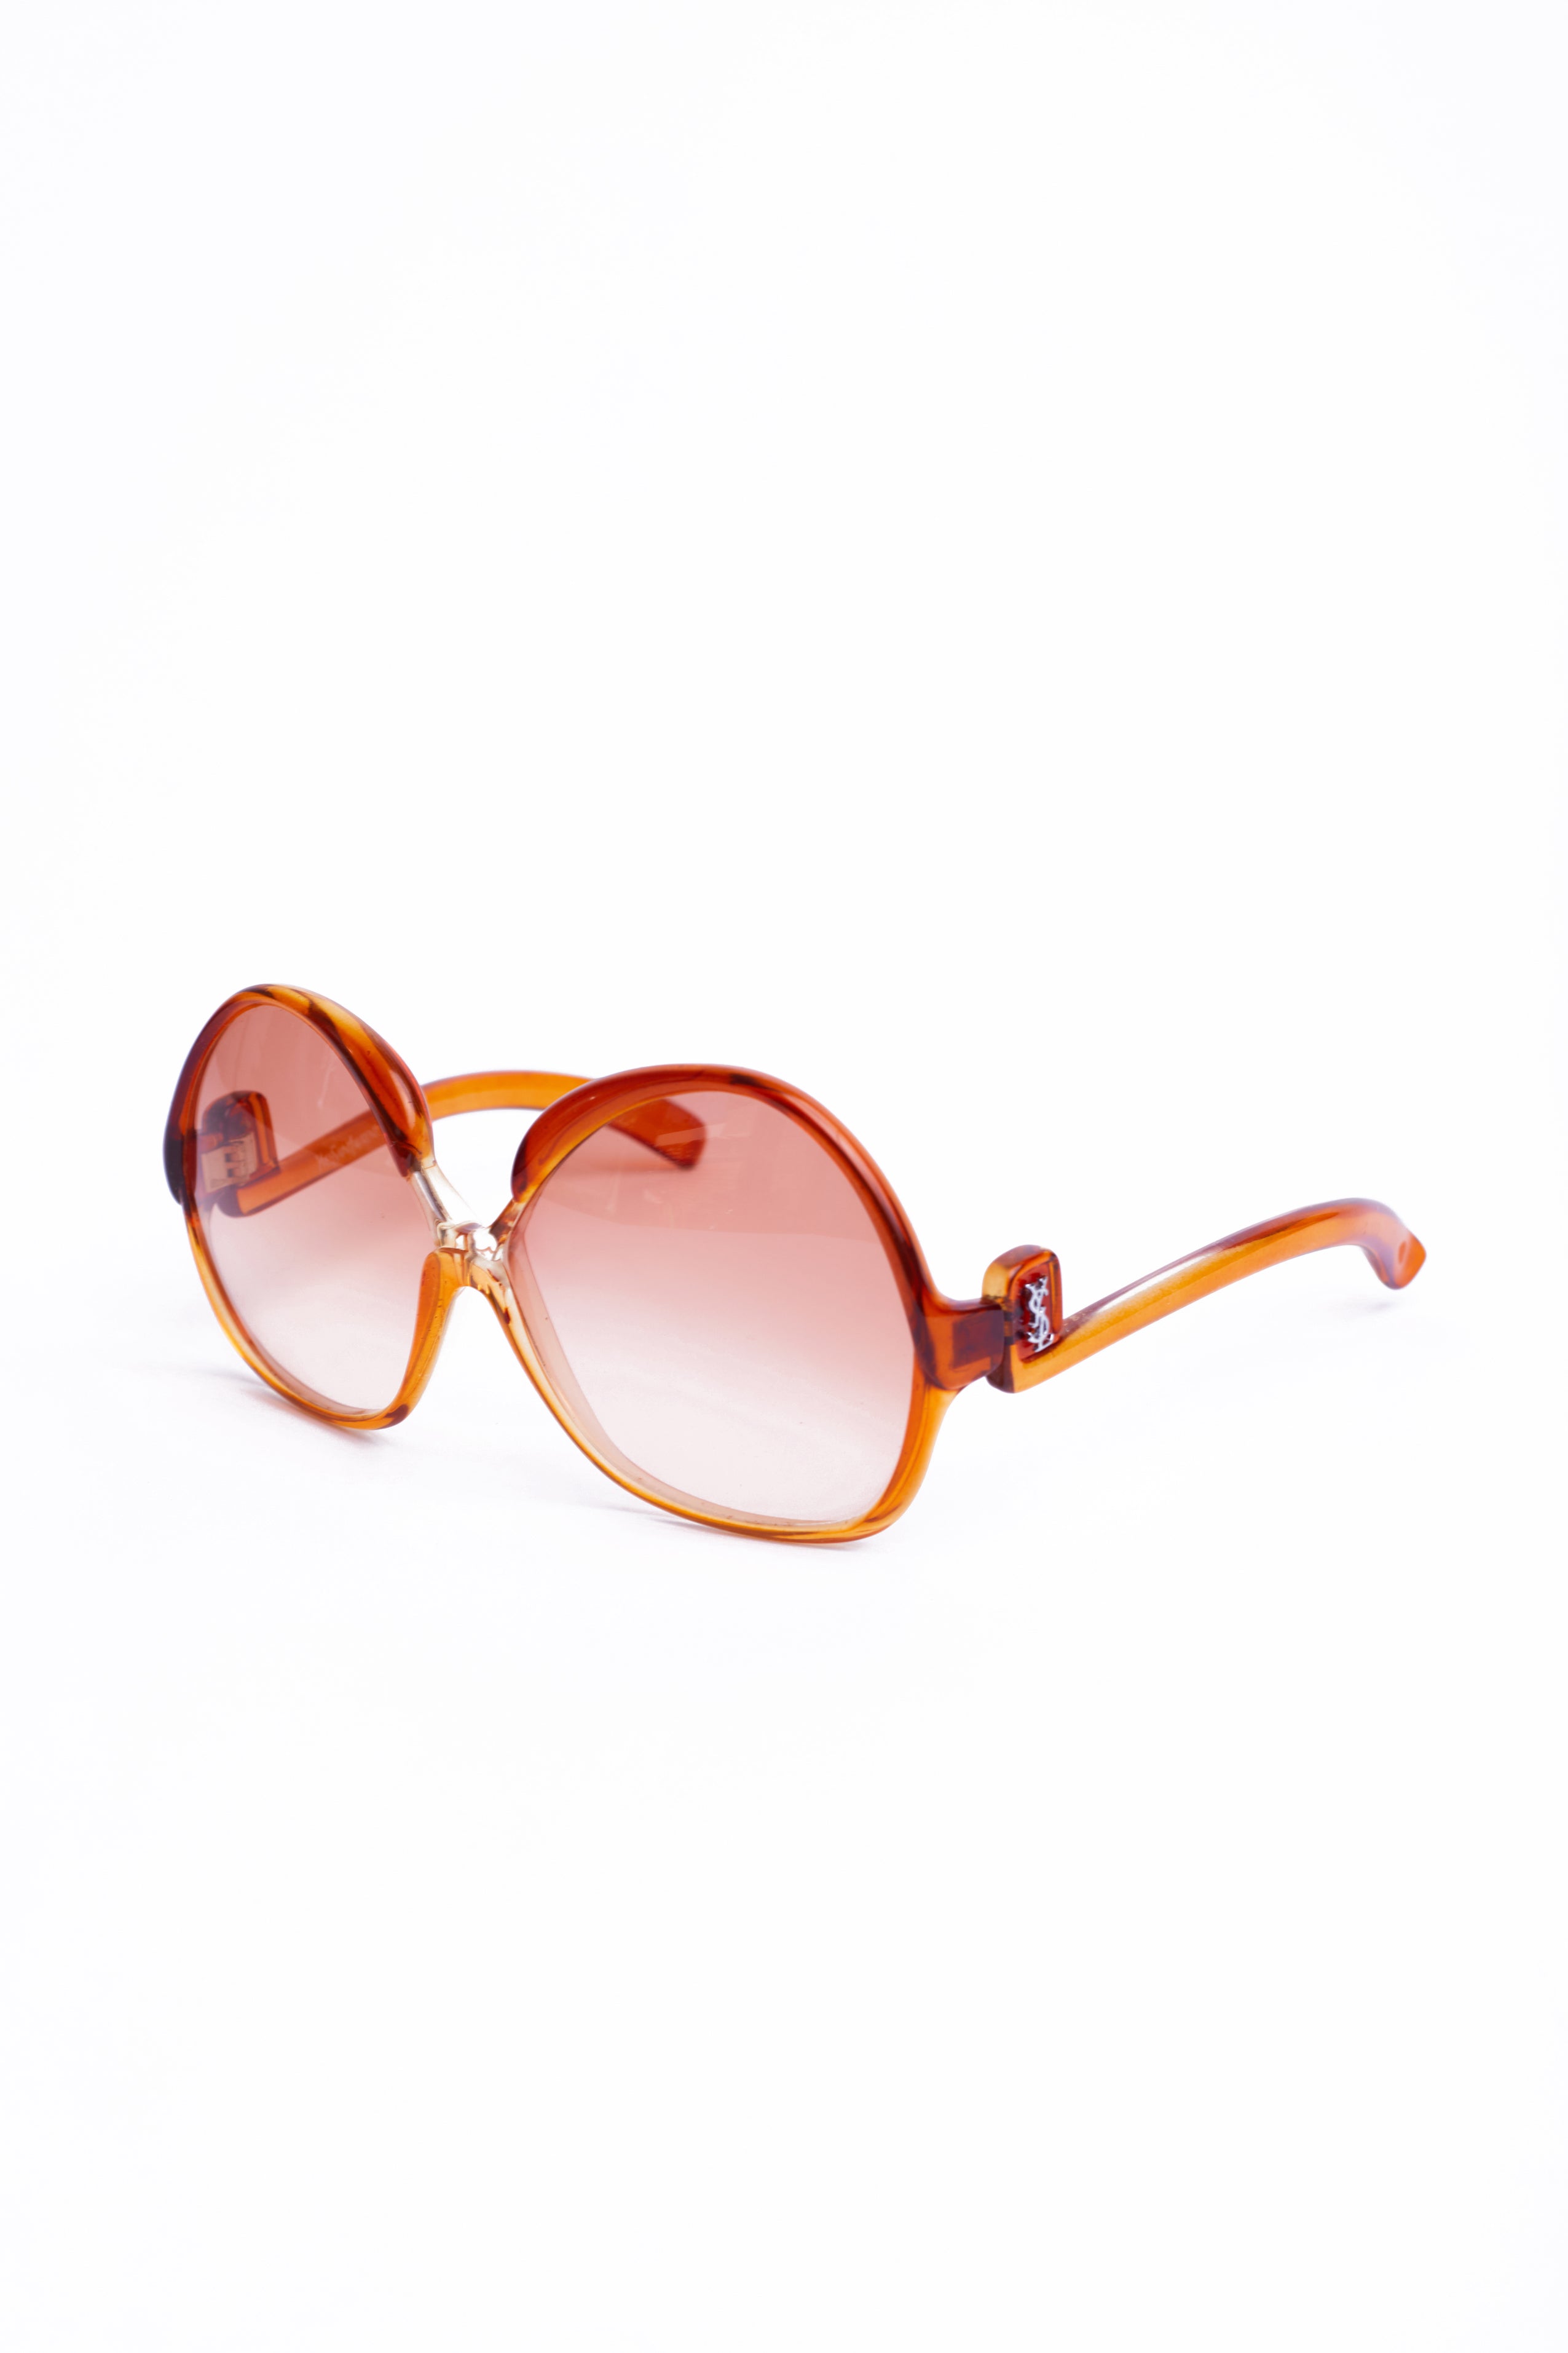 Yves Saint Laurent <br> S/S 1978 deadstock oversized amber frame YSL logo arm sunglasses 7775